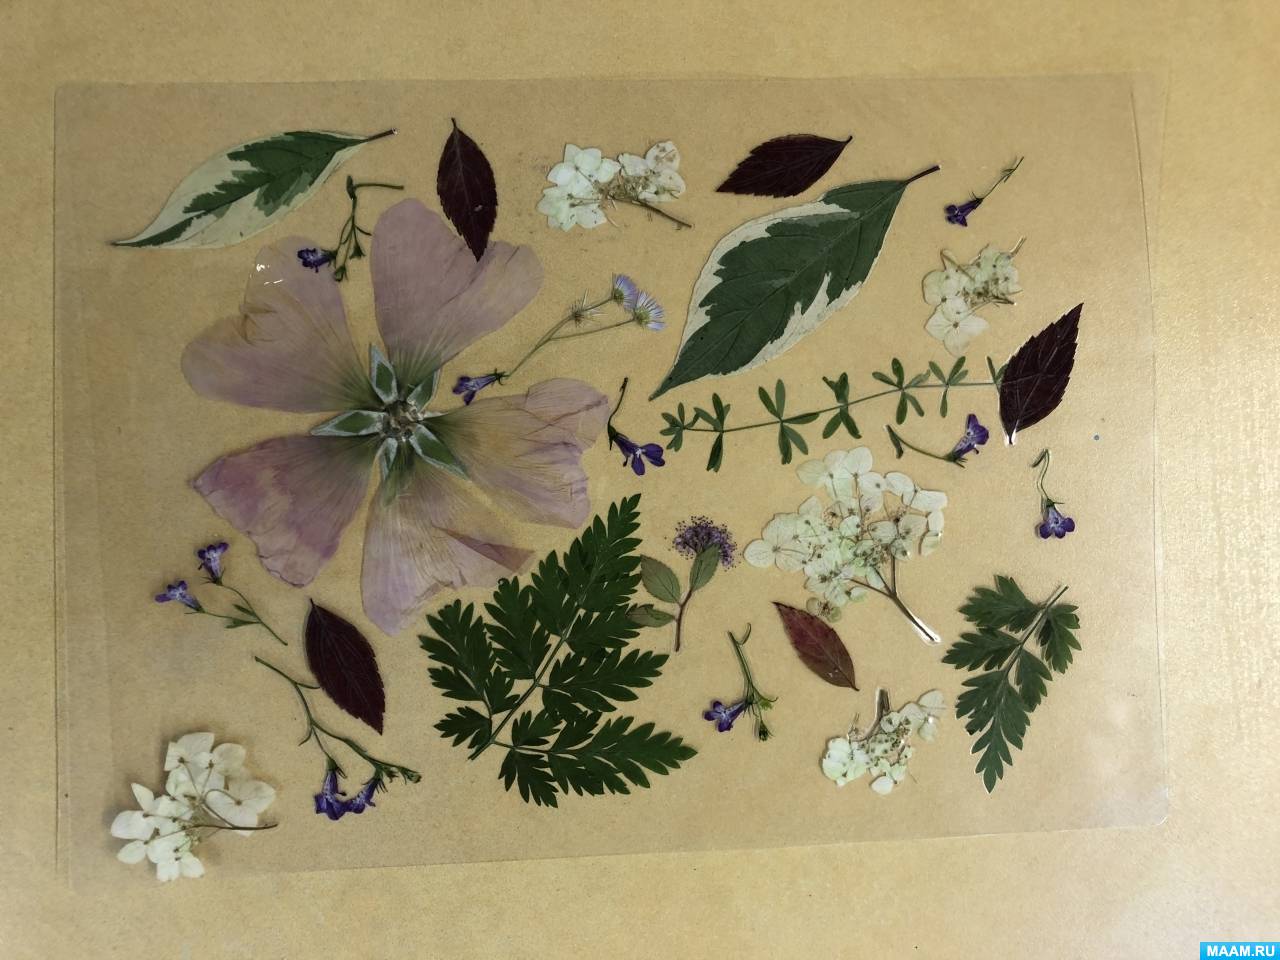 Пошаговое создание открытки с объемным украшением из листьев